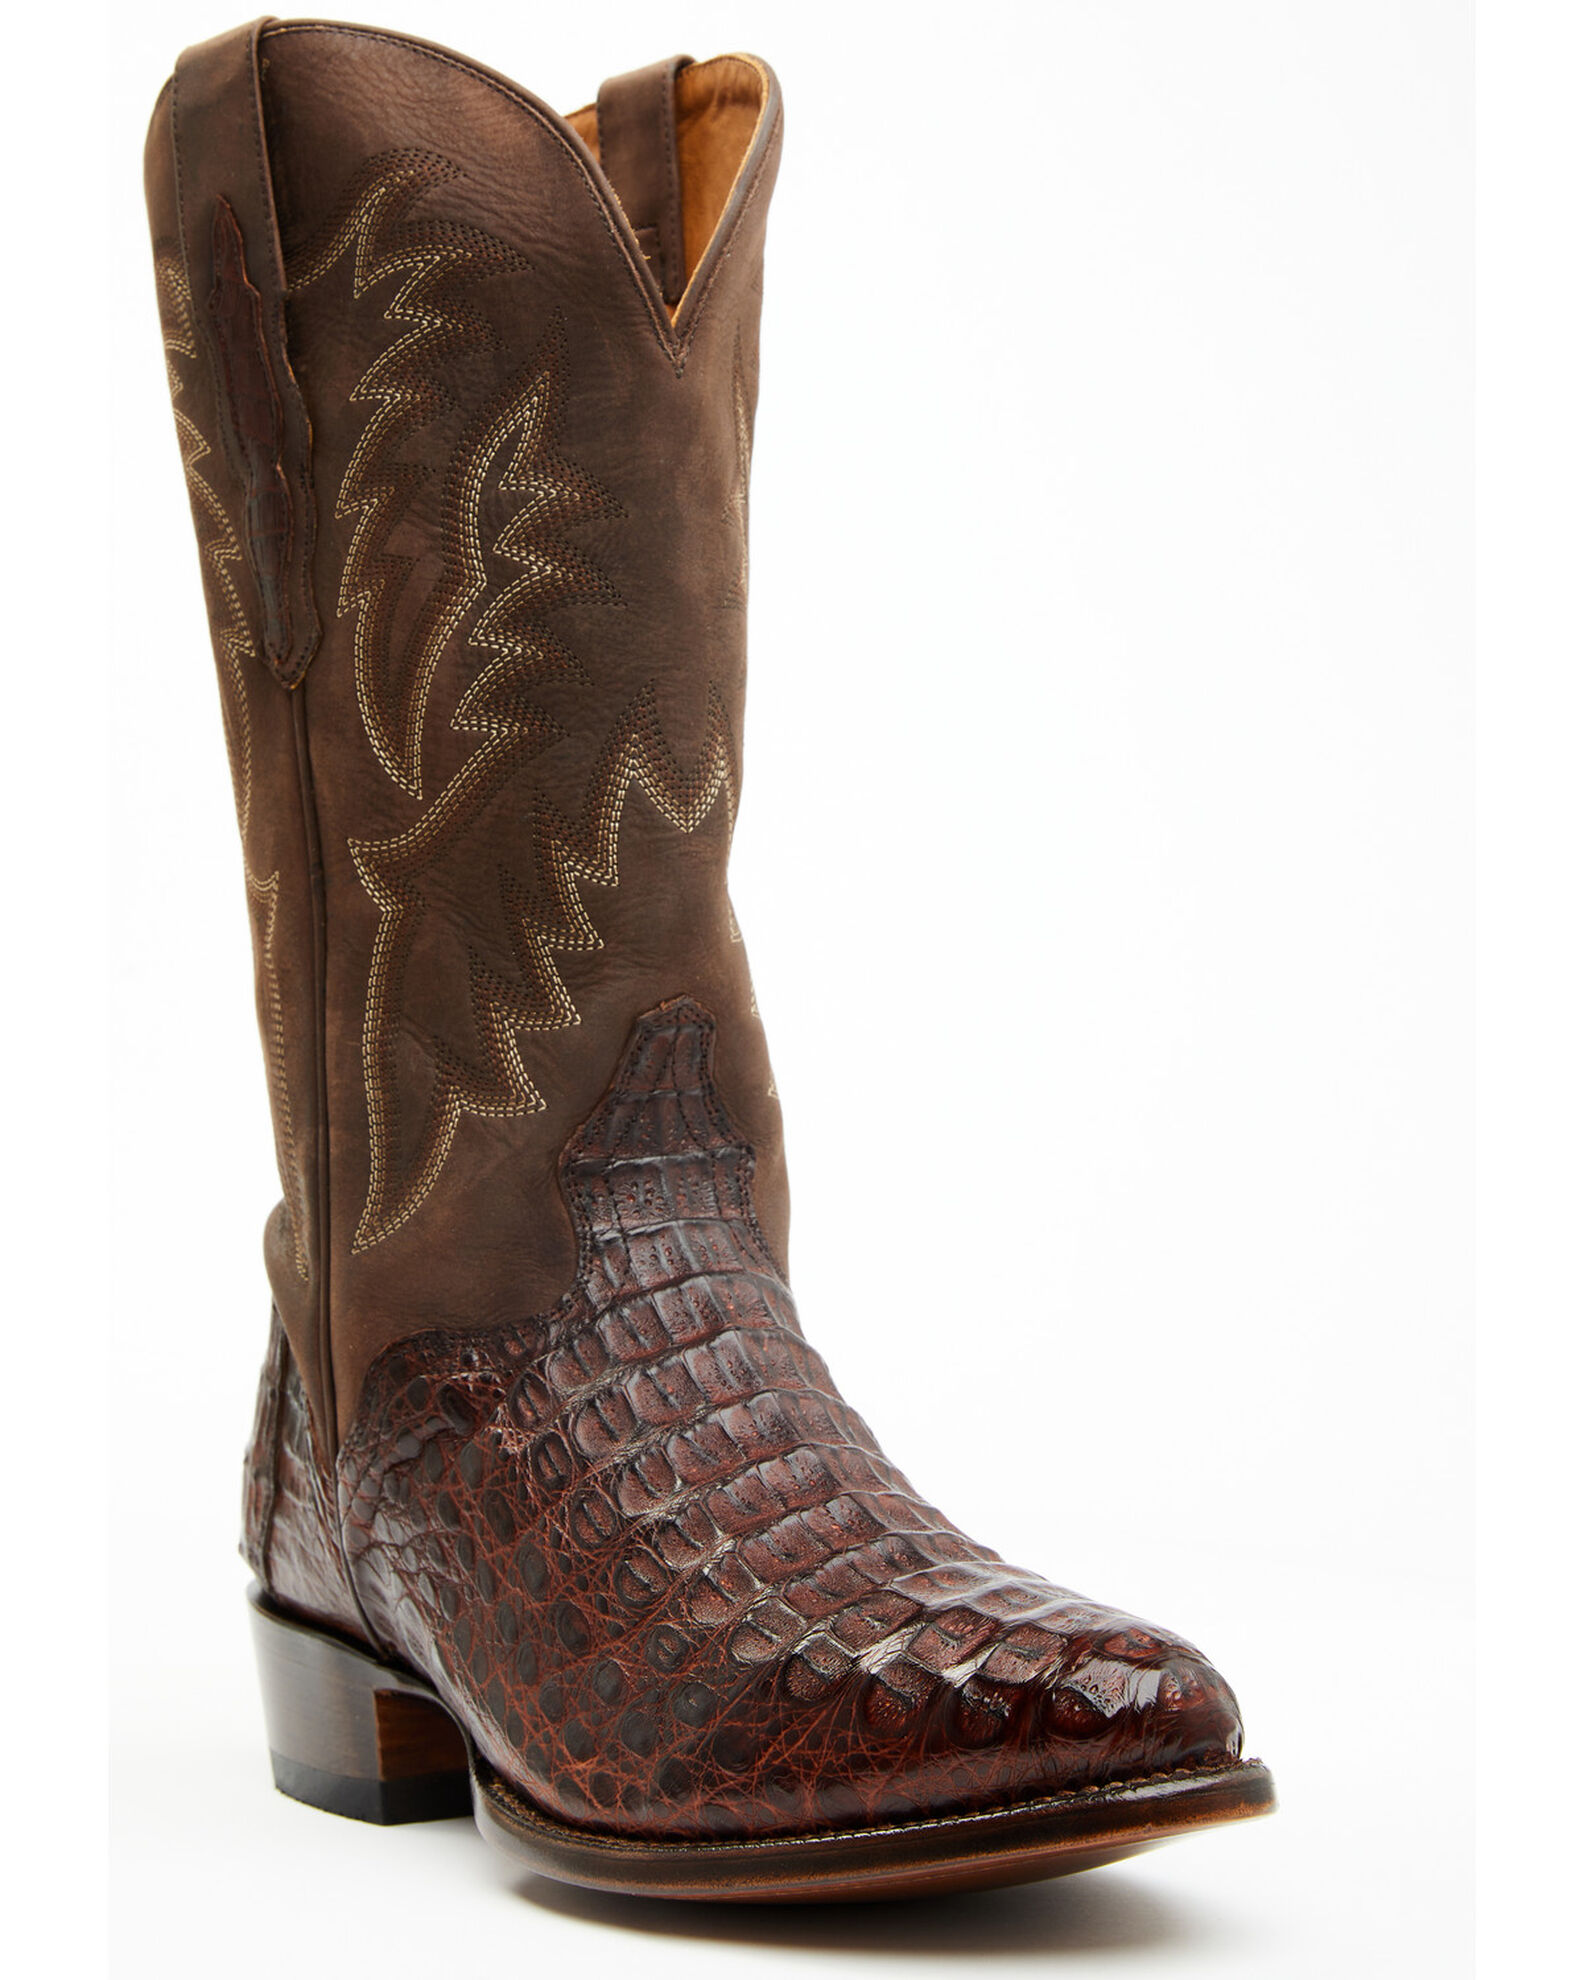 El Dorado Men's Exotic Caiman Western Boots - Medium Toe